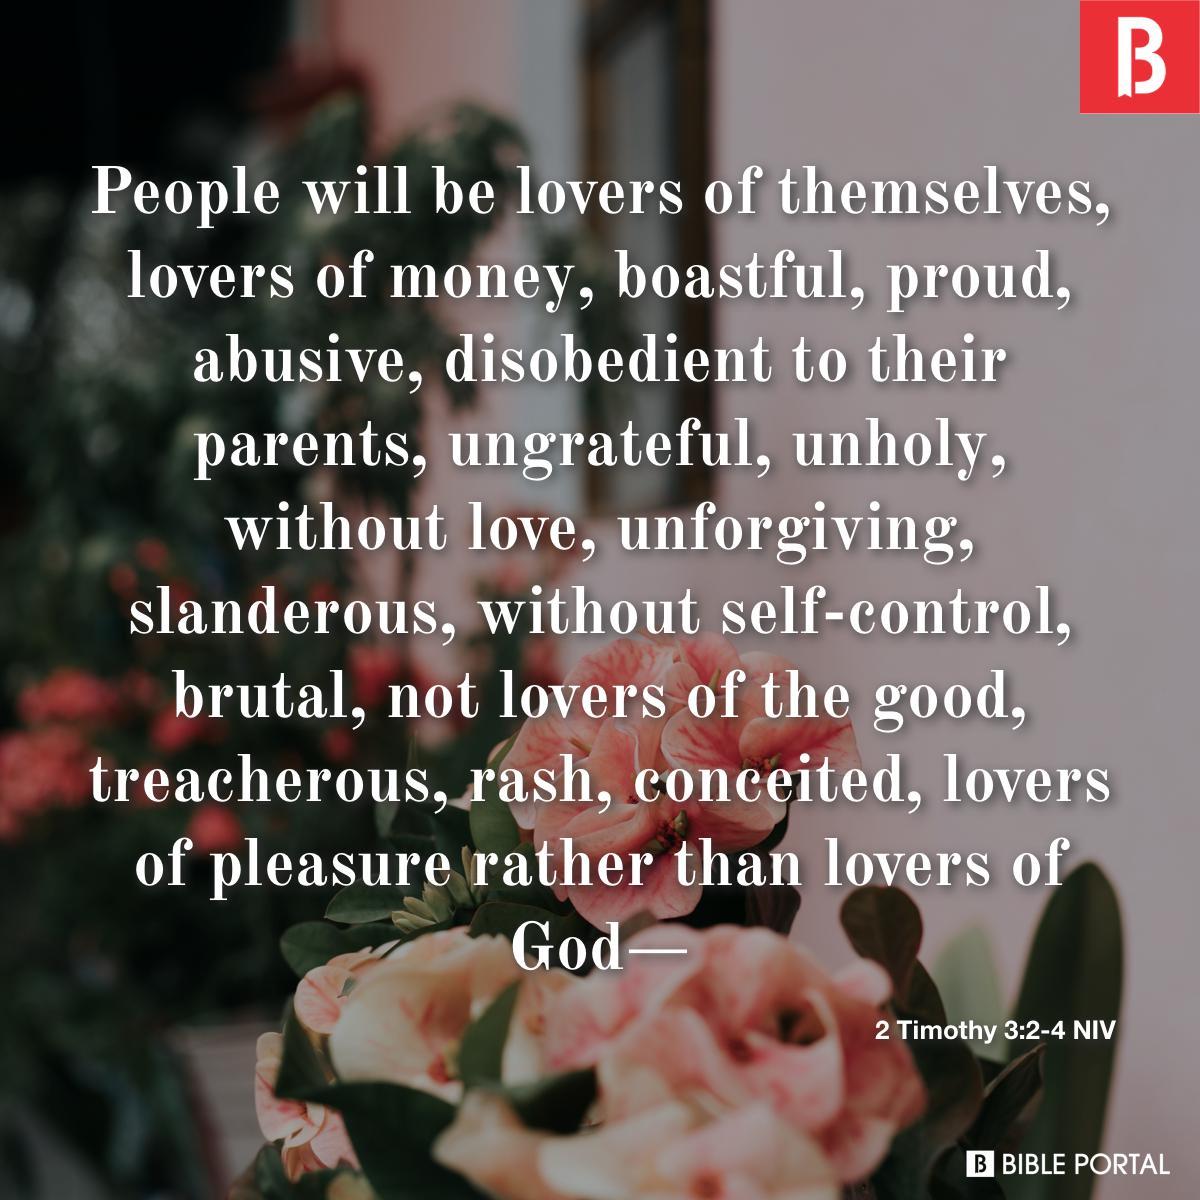 2 Timothy 3:2-4 NIV